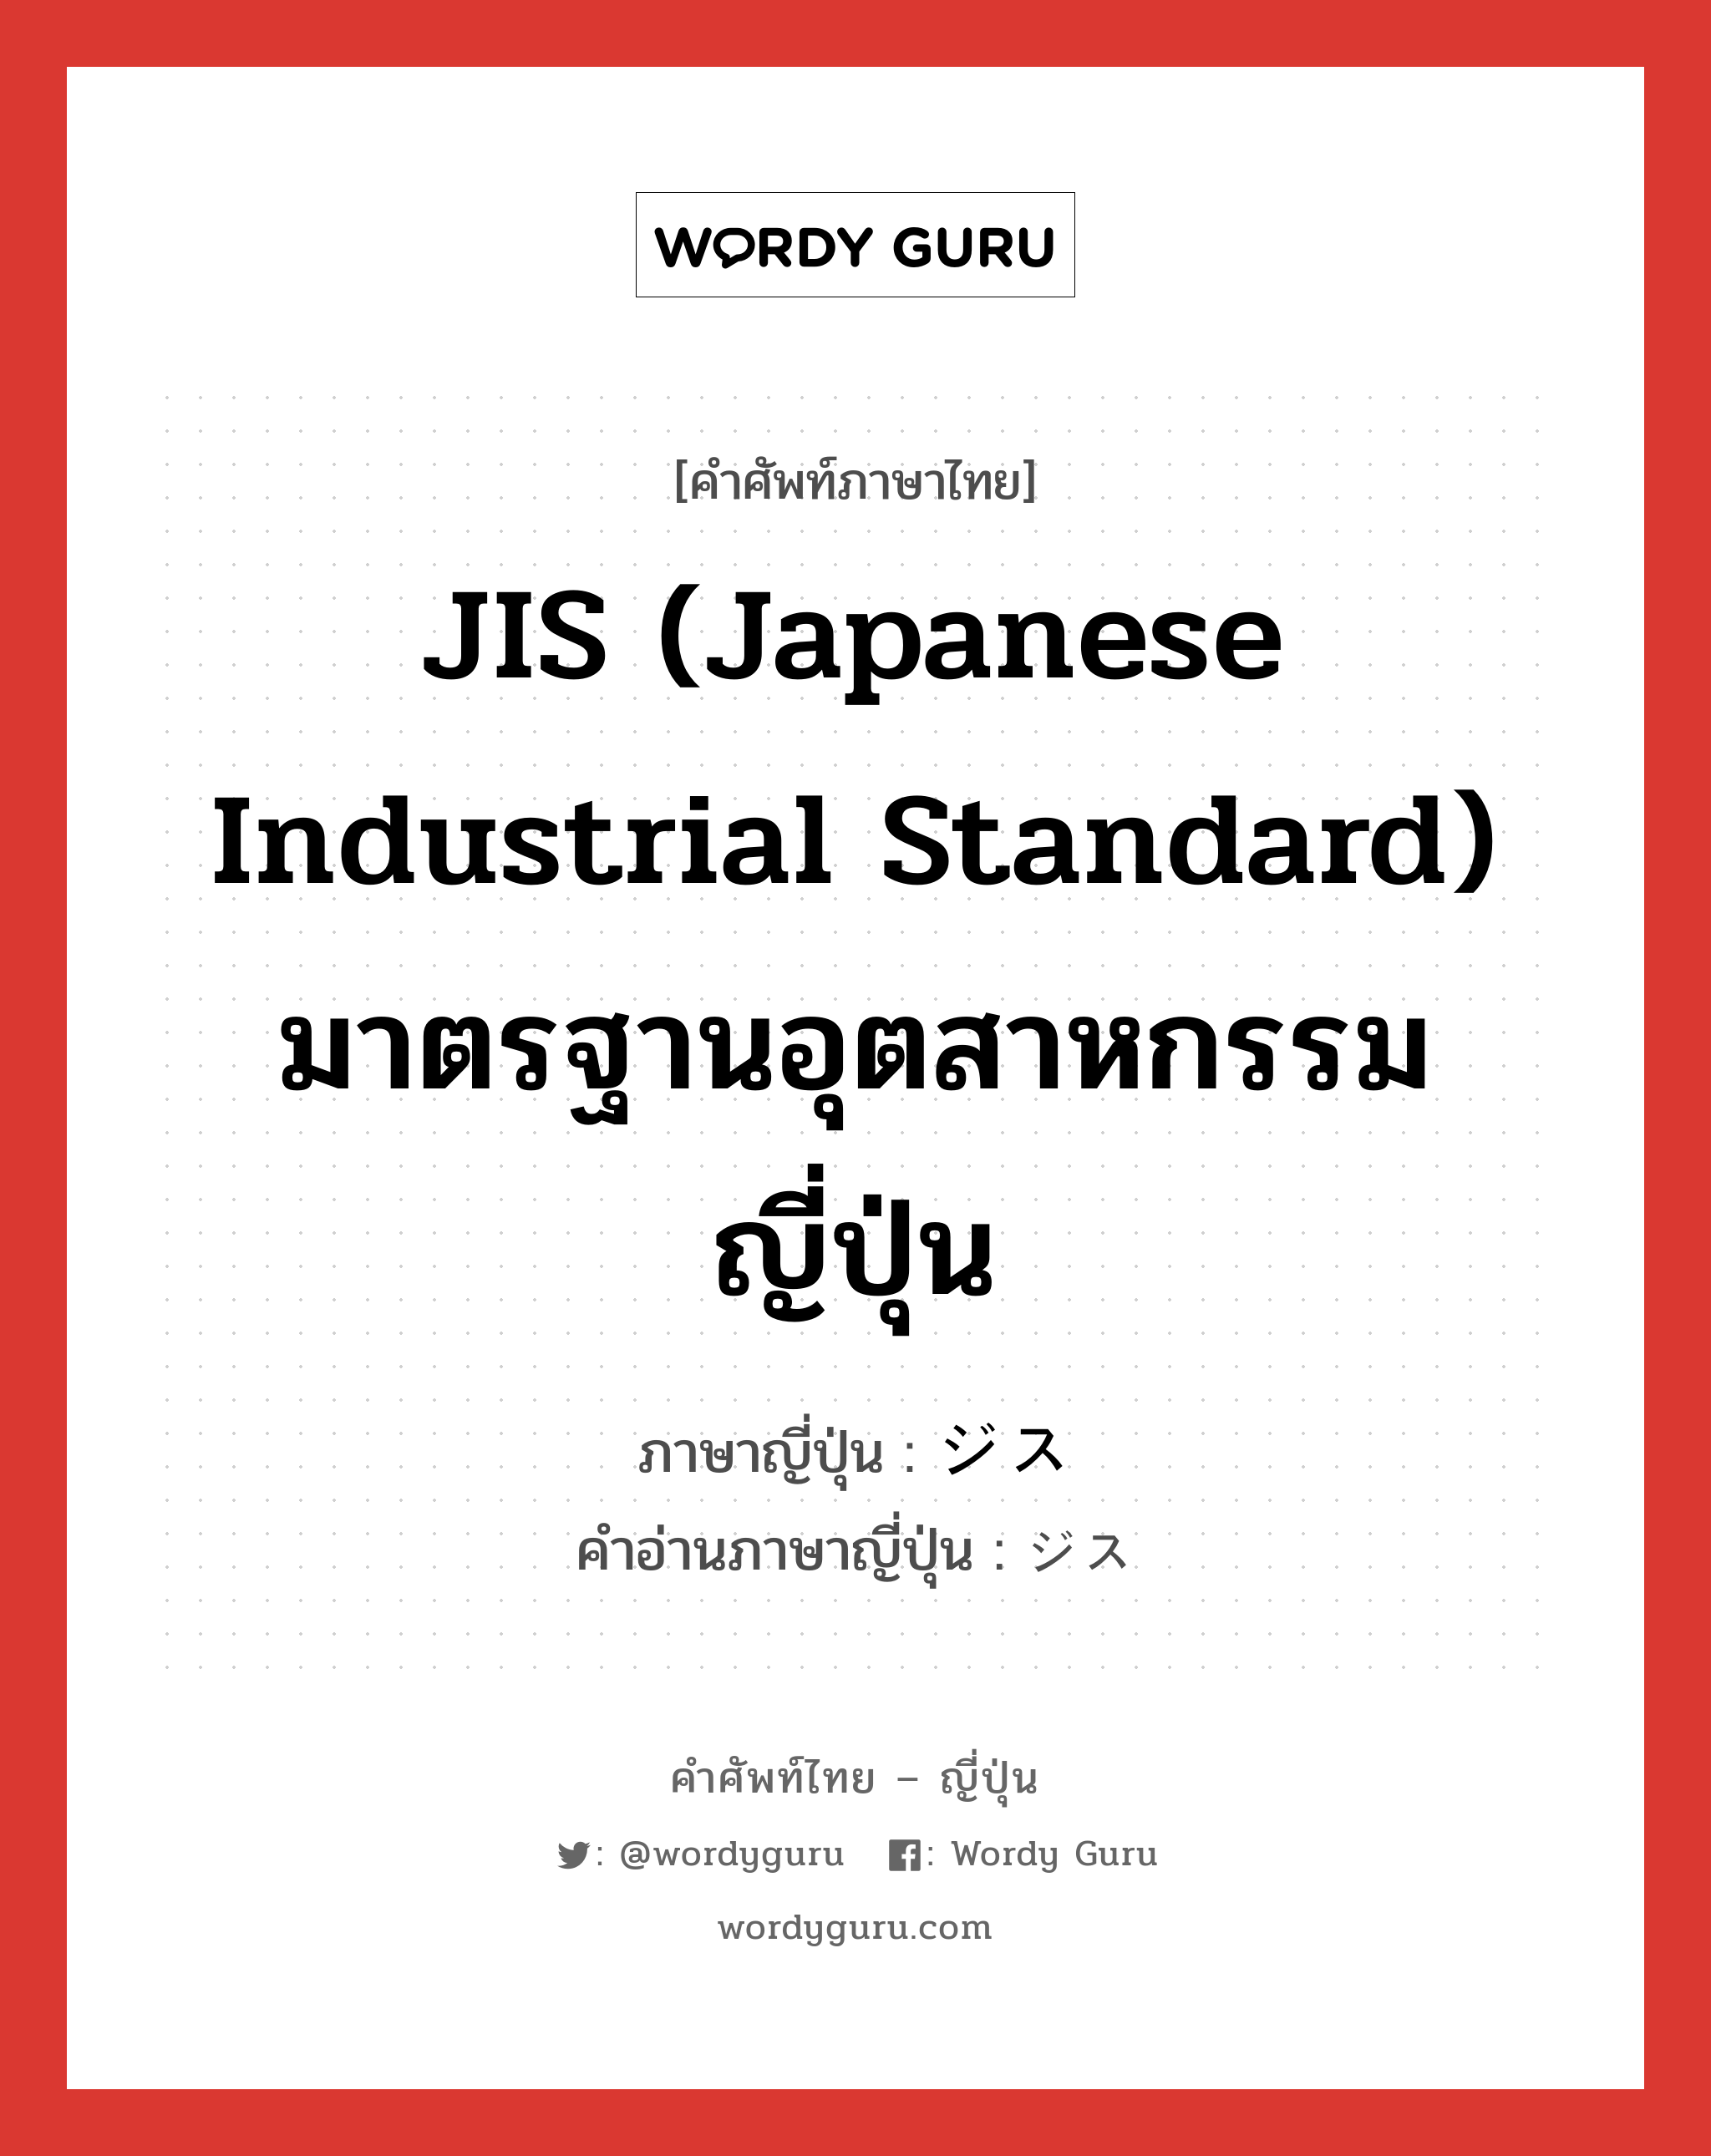 JIS (Japanese Industrial Standard) มาตรฐานอุตสาหกรรมญี่ปุ่น ภาษาญี่ปุ่นคืออะไร, คำศัพท์ภาษาไทย - ญี่ปุ่น JIS (Japanese Industrial Standard) มาตรฐานอุตสาหกรรมญี่ปุ่น ภาษาญี่ปุ่น ジス คำอ่านภาษาญี่ปุ่น ジス หมวด n หมวด n